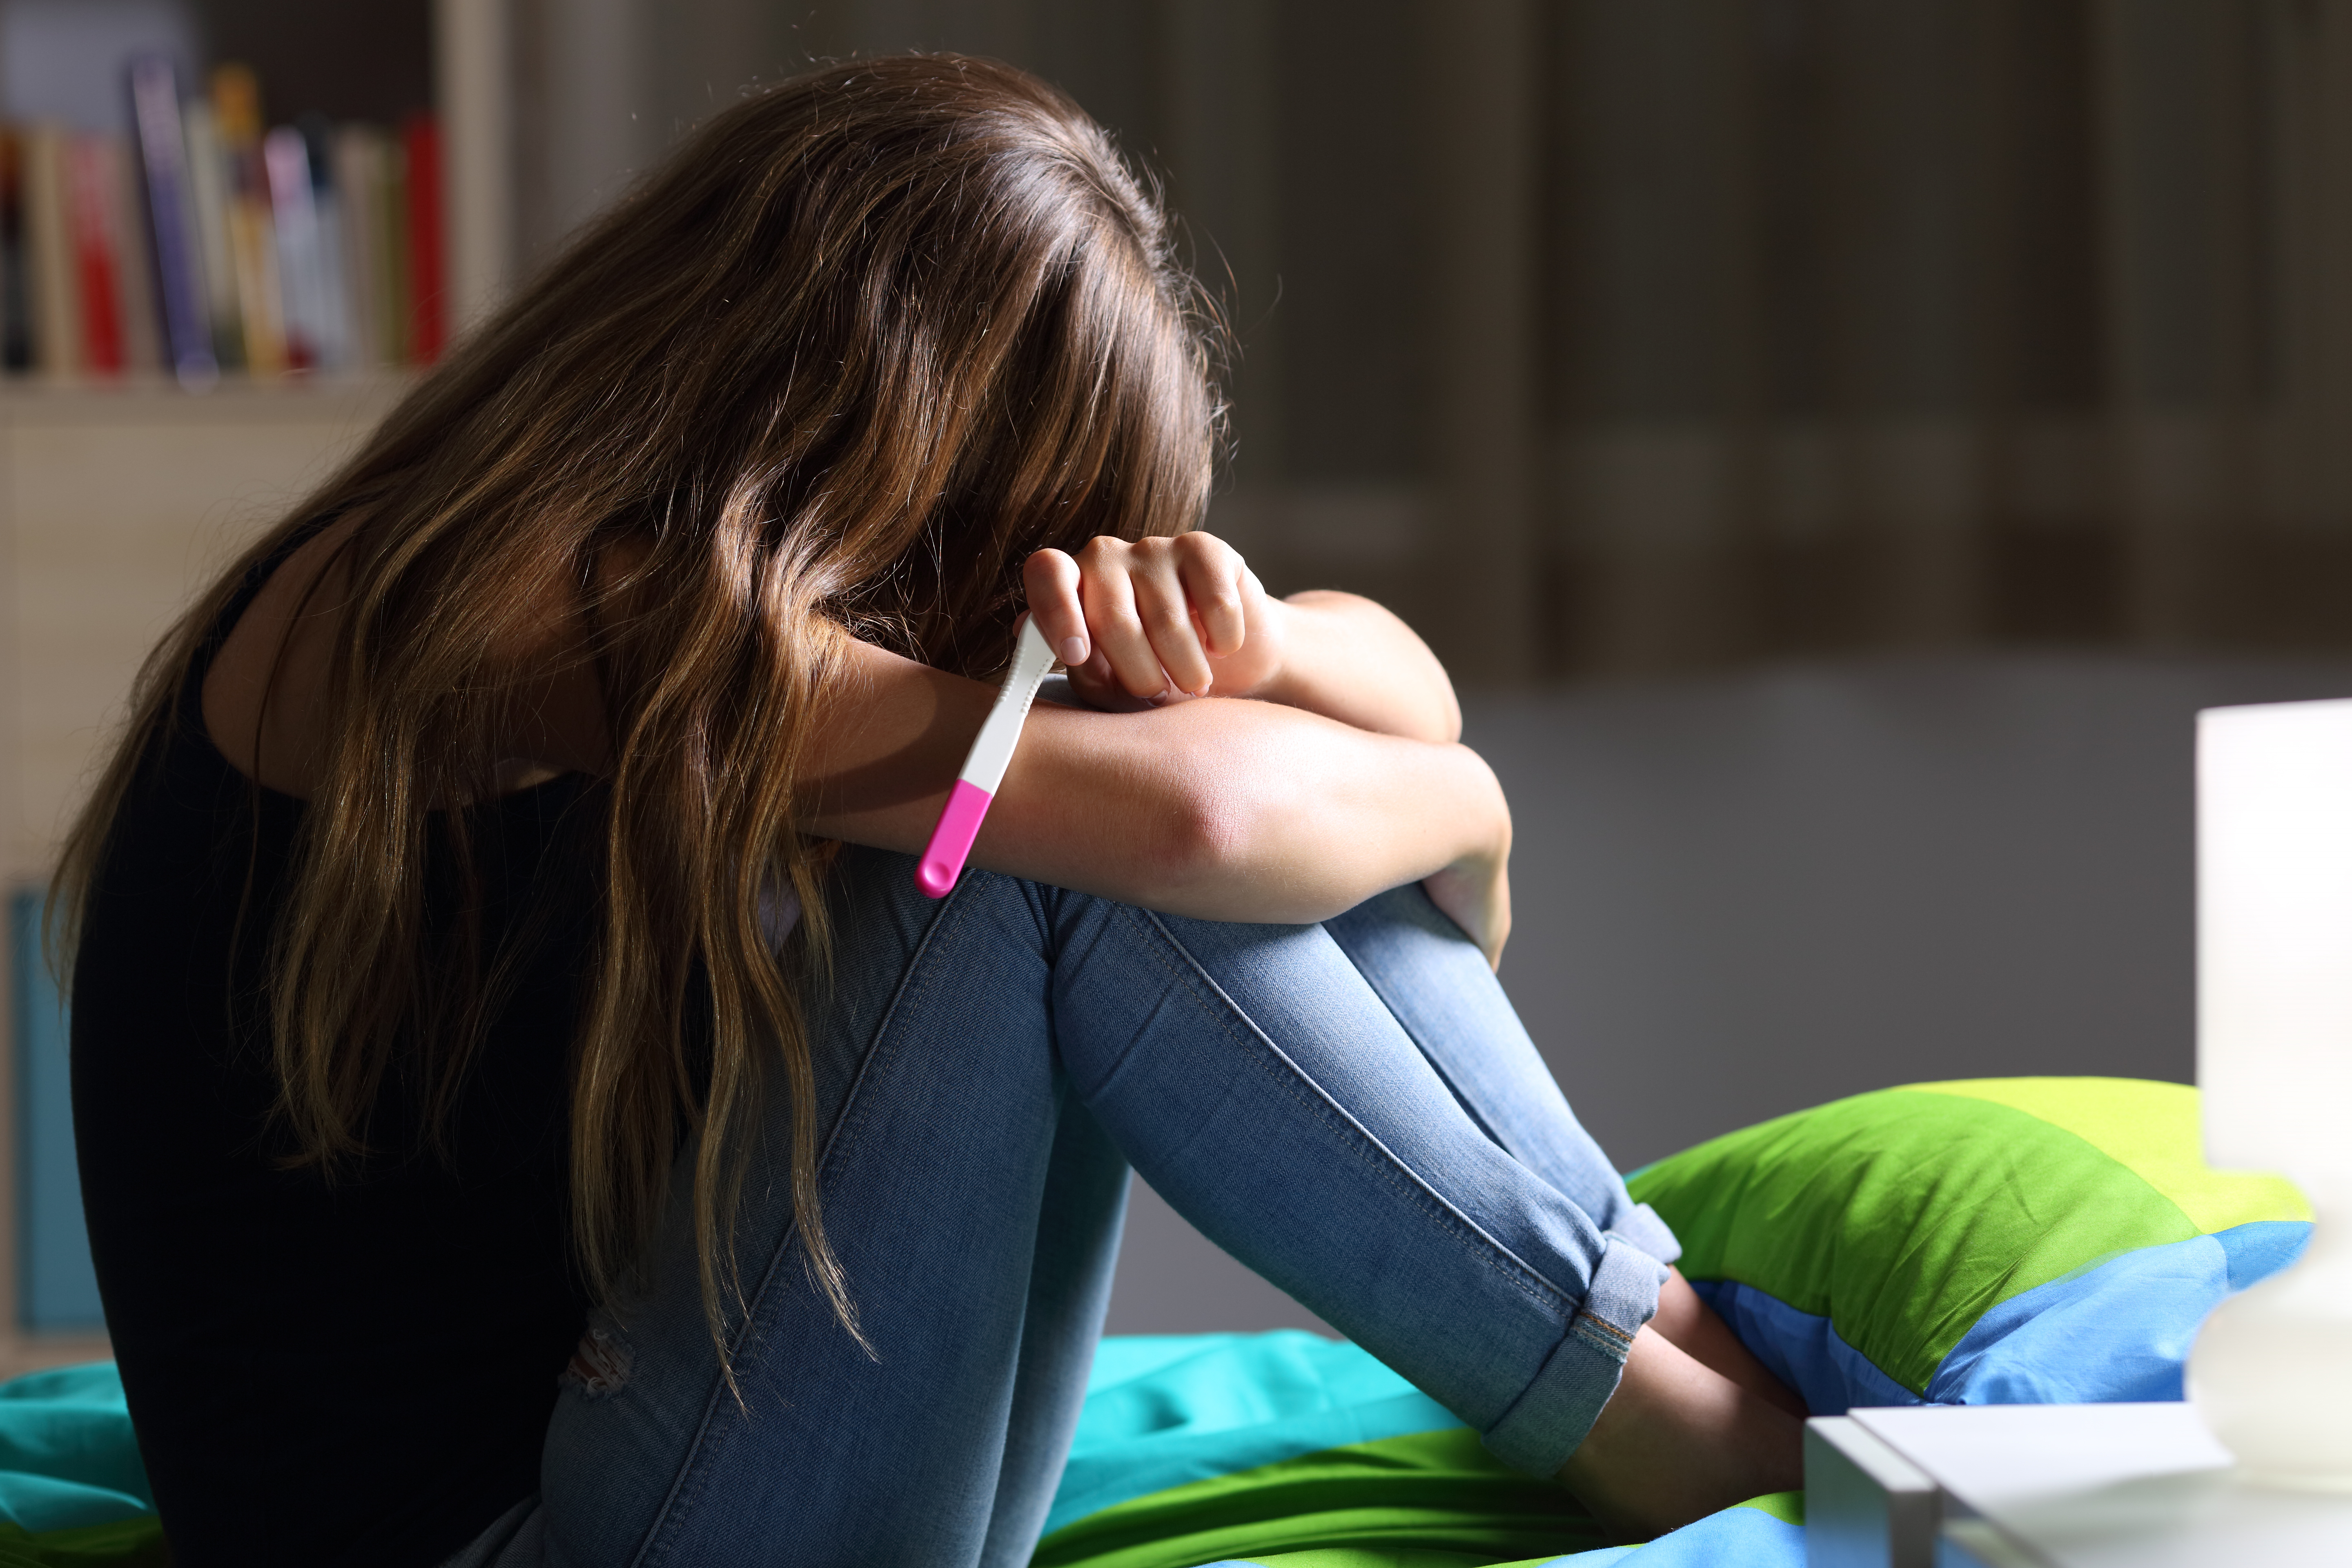 Ein jugendliches Mädchen weint wegen eines positiven Schwangerschaftstests | Quelle: Shutterstock